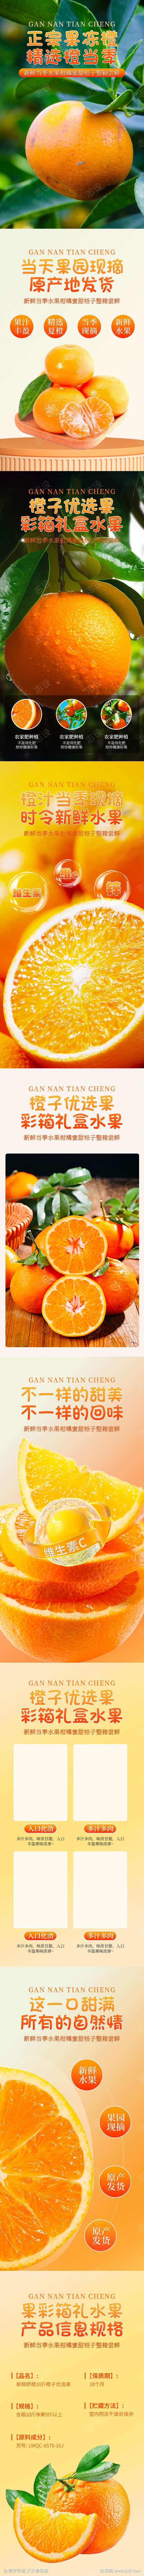 简约大气生鲜水果橙子蔬菜详情页